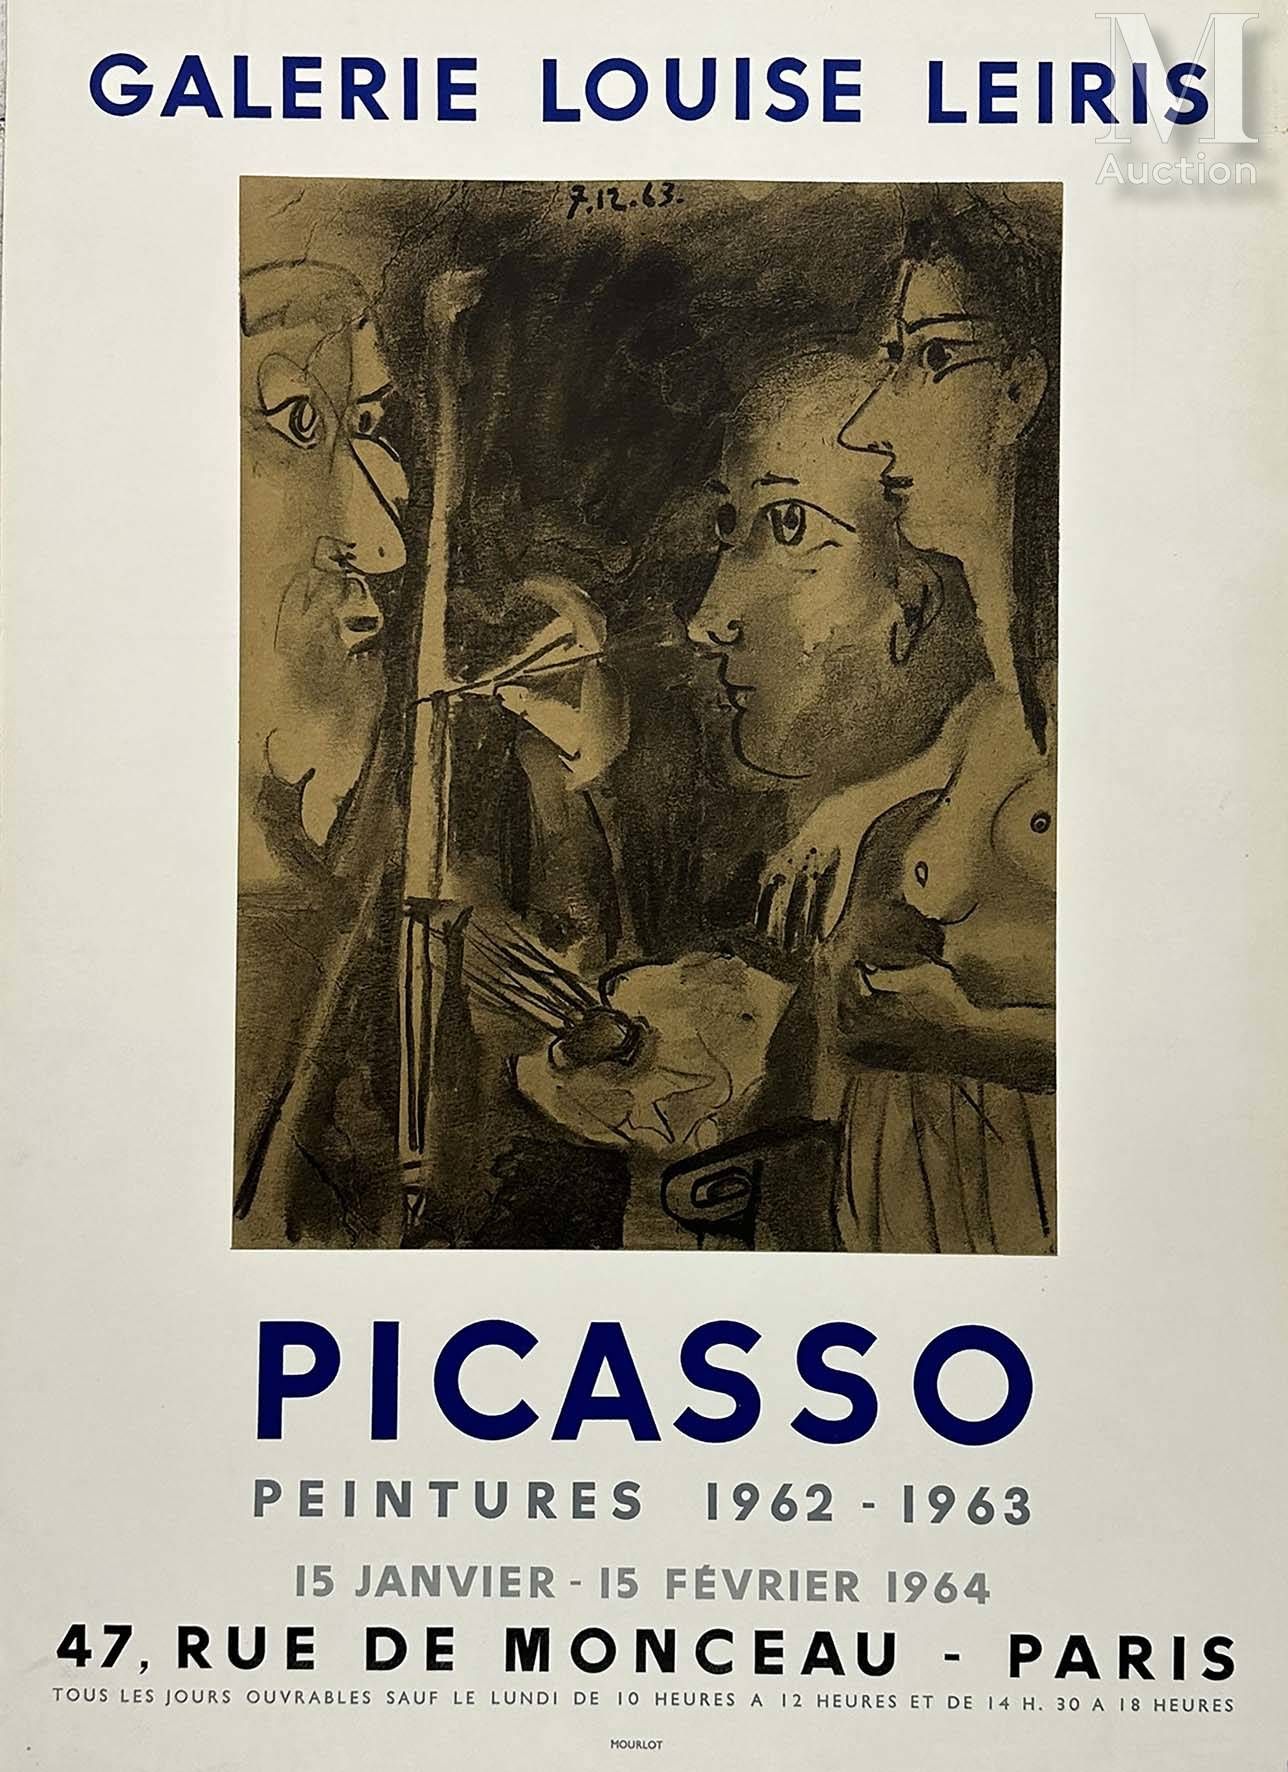 PICASSO PABLO Picasso Peintures 1962 1963 Galerie Louise Leiris
Picasso Peinture&hellip;